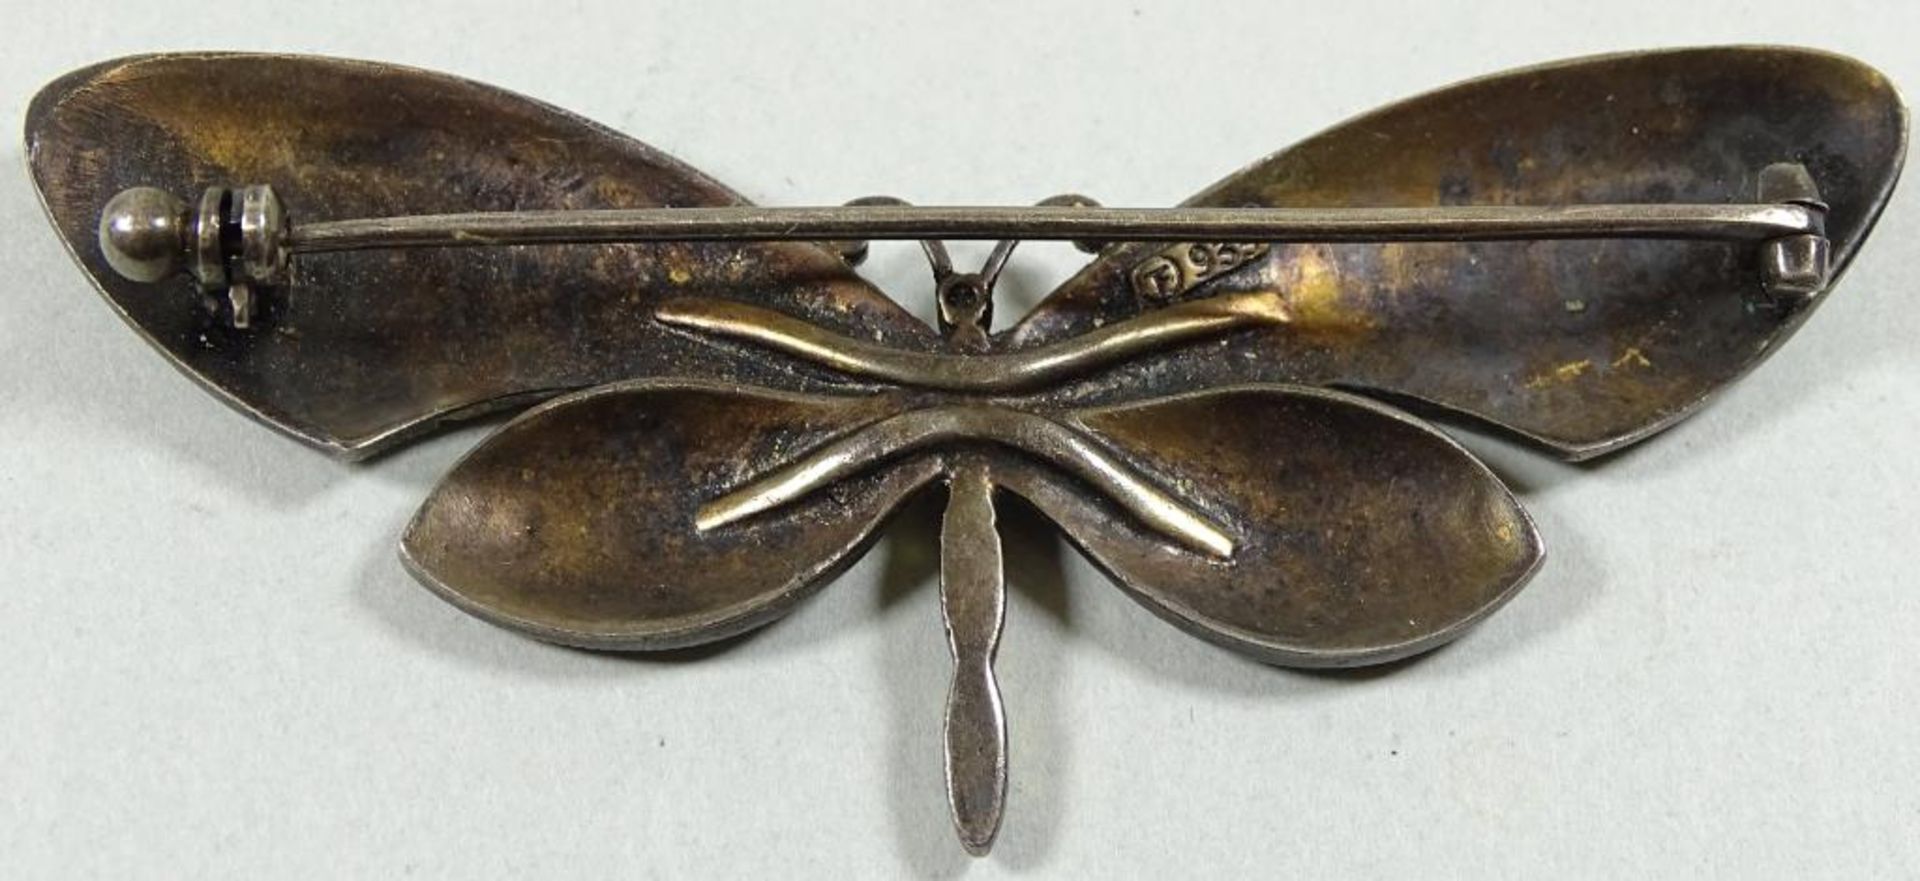 "Theodor Fahrner" Schmetterlingsbrosche,emailliert,Silber -935-,L-7,0cm,b- 3,0cm,gewicht: 12,7gr. - Bild 3 aus 4